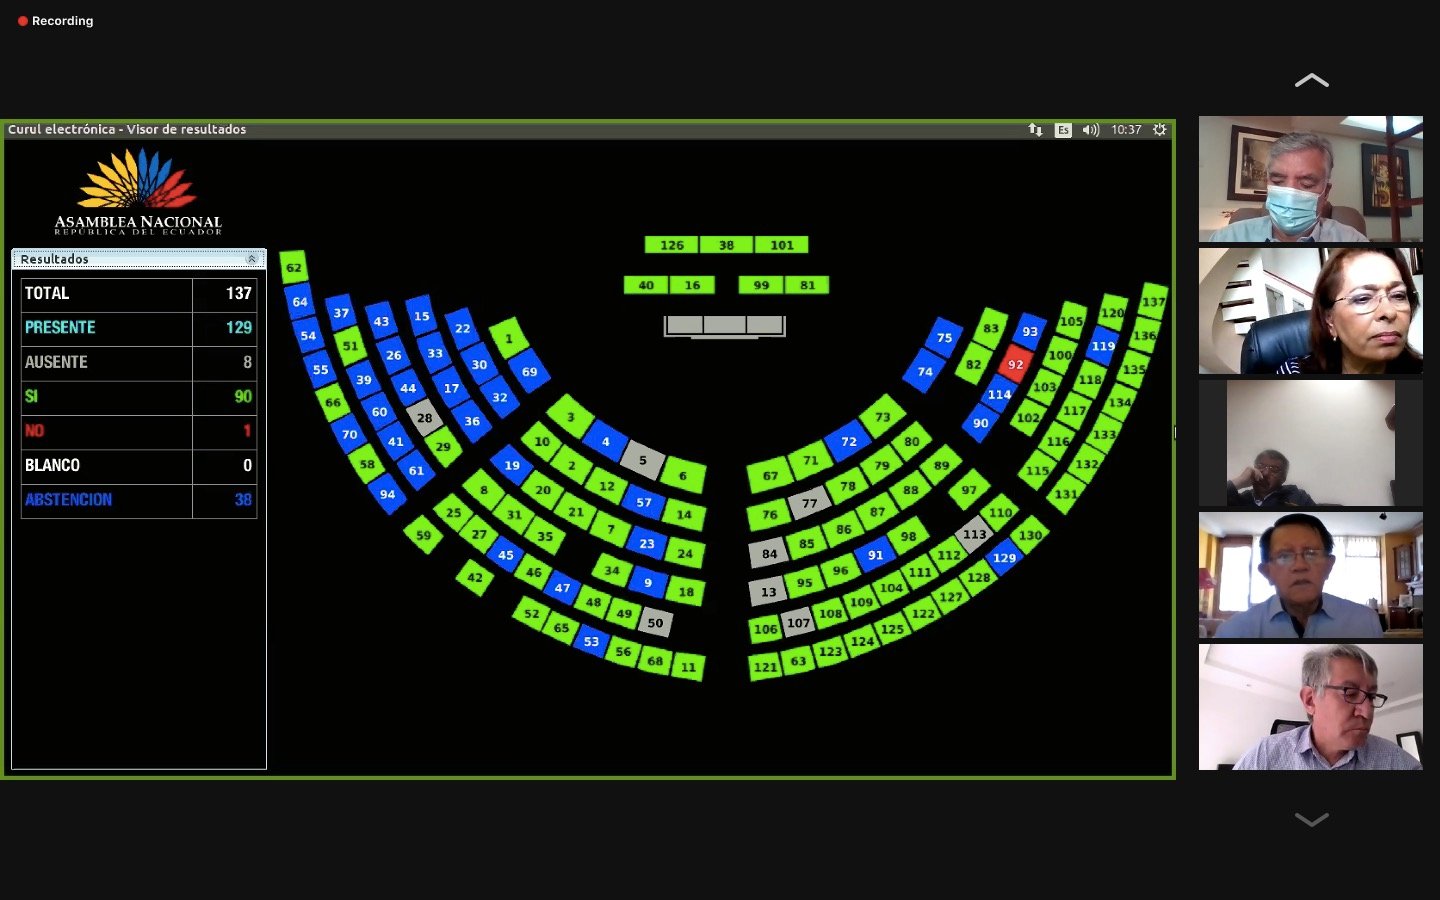 88 asambleístas votaron a favor de la reconsideración de la ley. Foto: Twitter @AsambleaEcuador